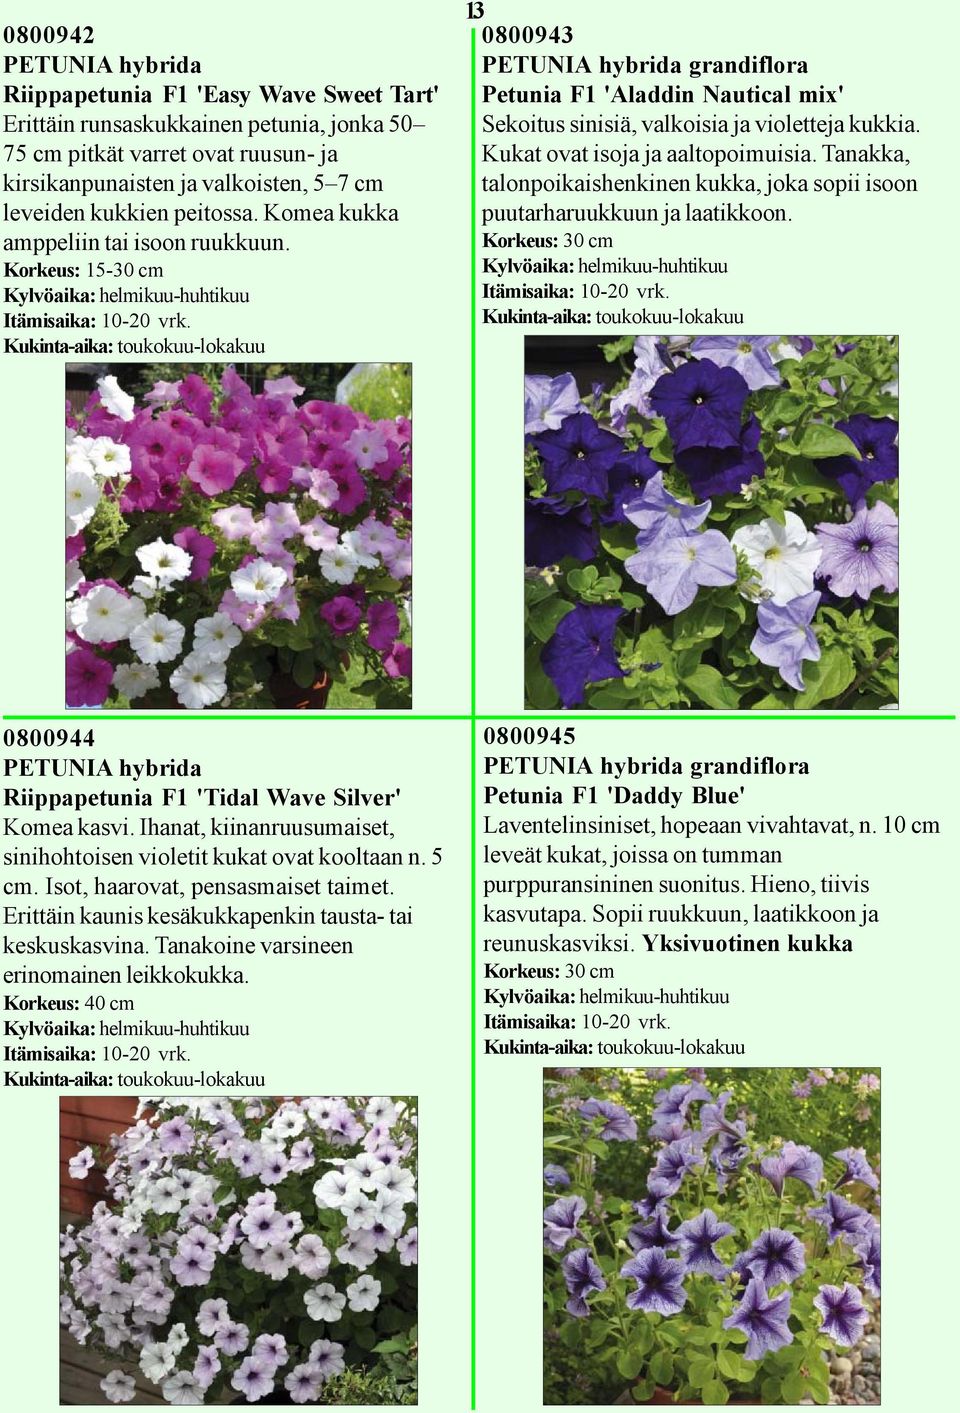 Korkeus: 15-30 cm Kukinta-aika: toukokuu-lokakuu 13 0800943 PETUNIA hybrida grandiflora Petunia F1 'Aladdin Nautical mix' Sekoitus sinisiä, valkoisia ja violetteja kukkia.